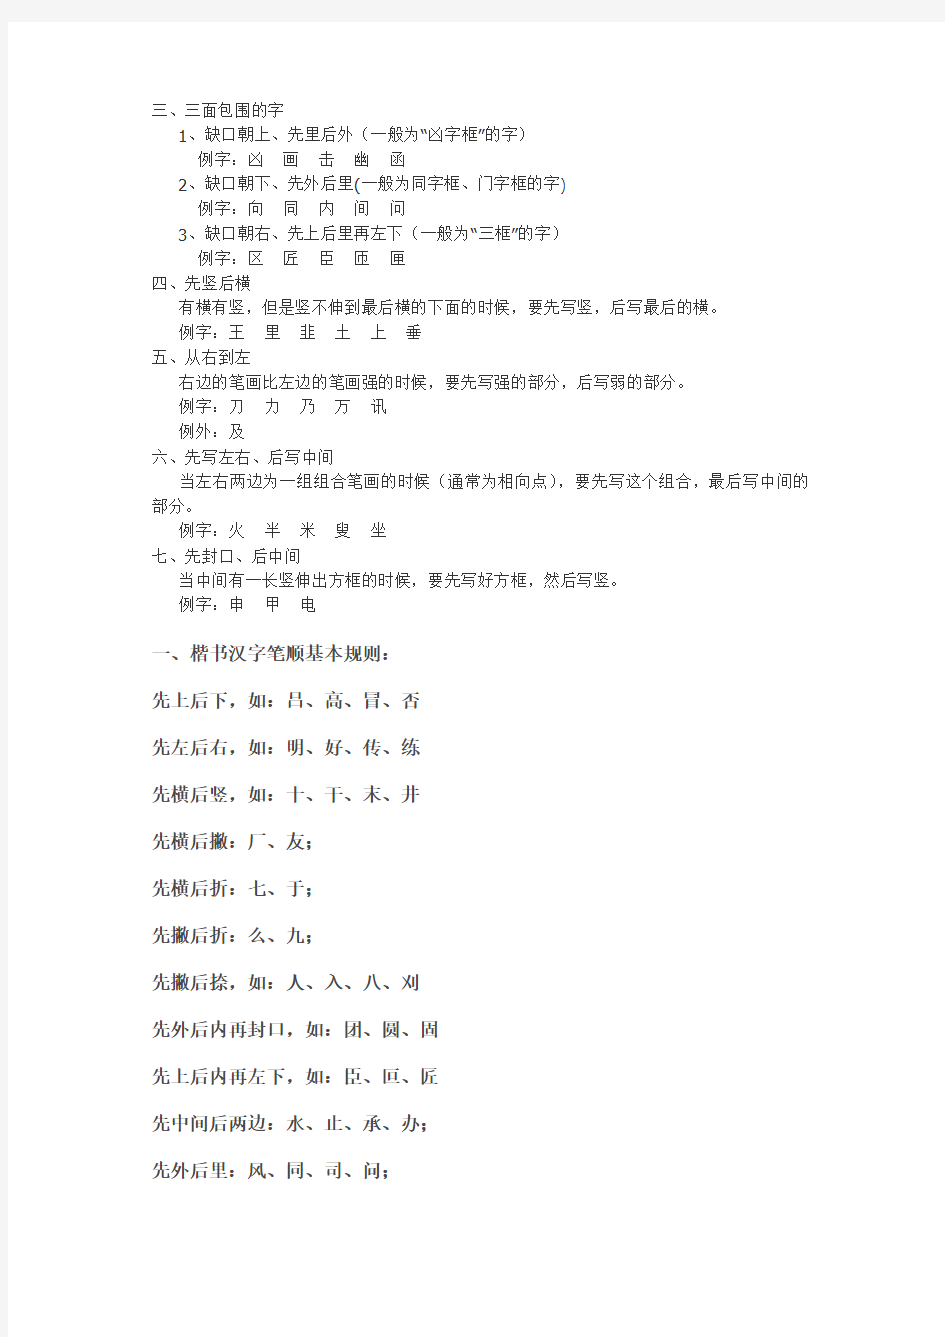 汉字的笔顺是书写汉字笔画和部件的先后顺序